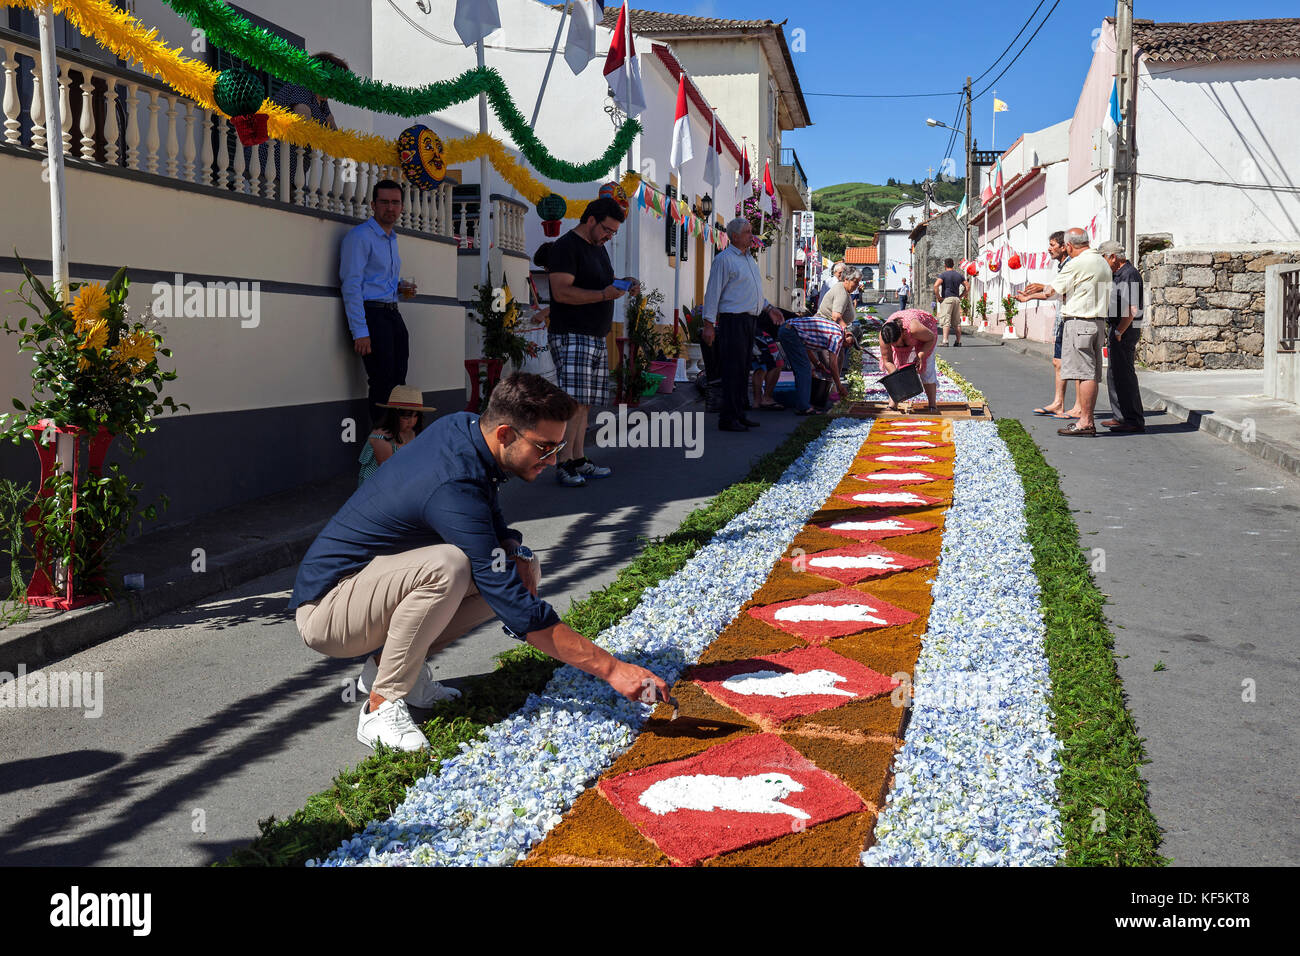 Tapis de Fleurs, la préparation de la procession à l'santo christo fest, ginetes, île de Sao Miguel, Açores, Portugal Banque D'Images